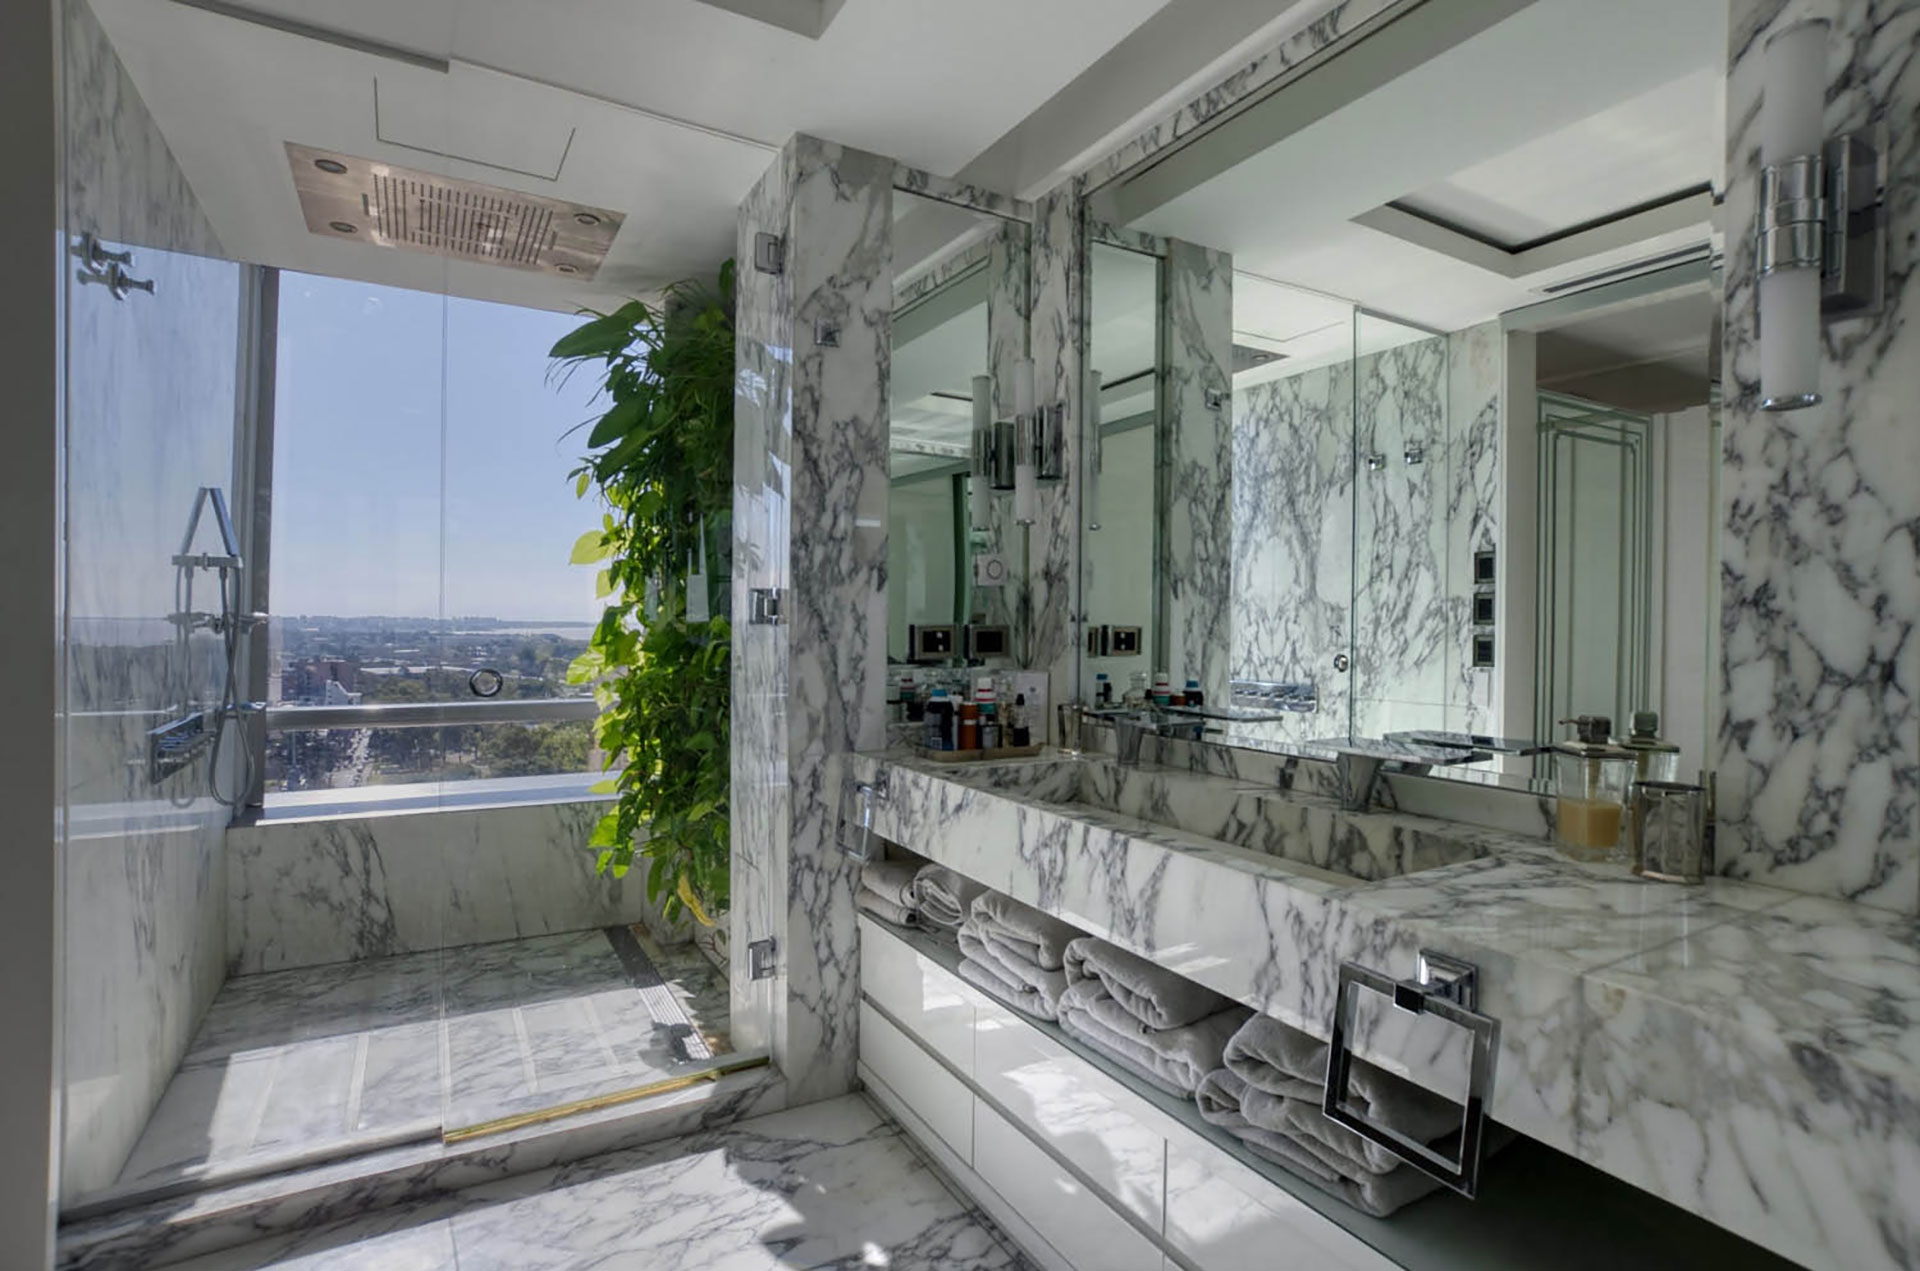 Baño y ducha cladestido en marmol, un estilo lujoso que se encuentra en las torres de vibiendas premium